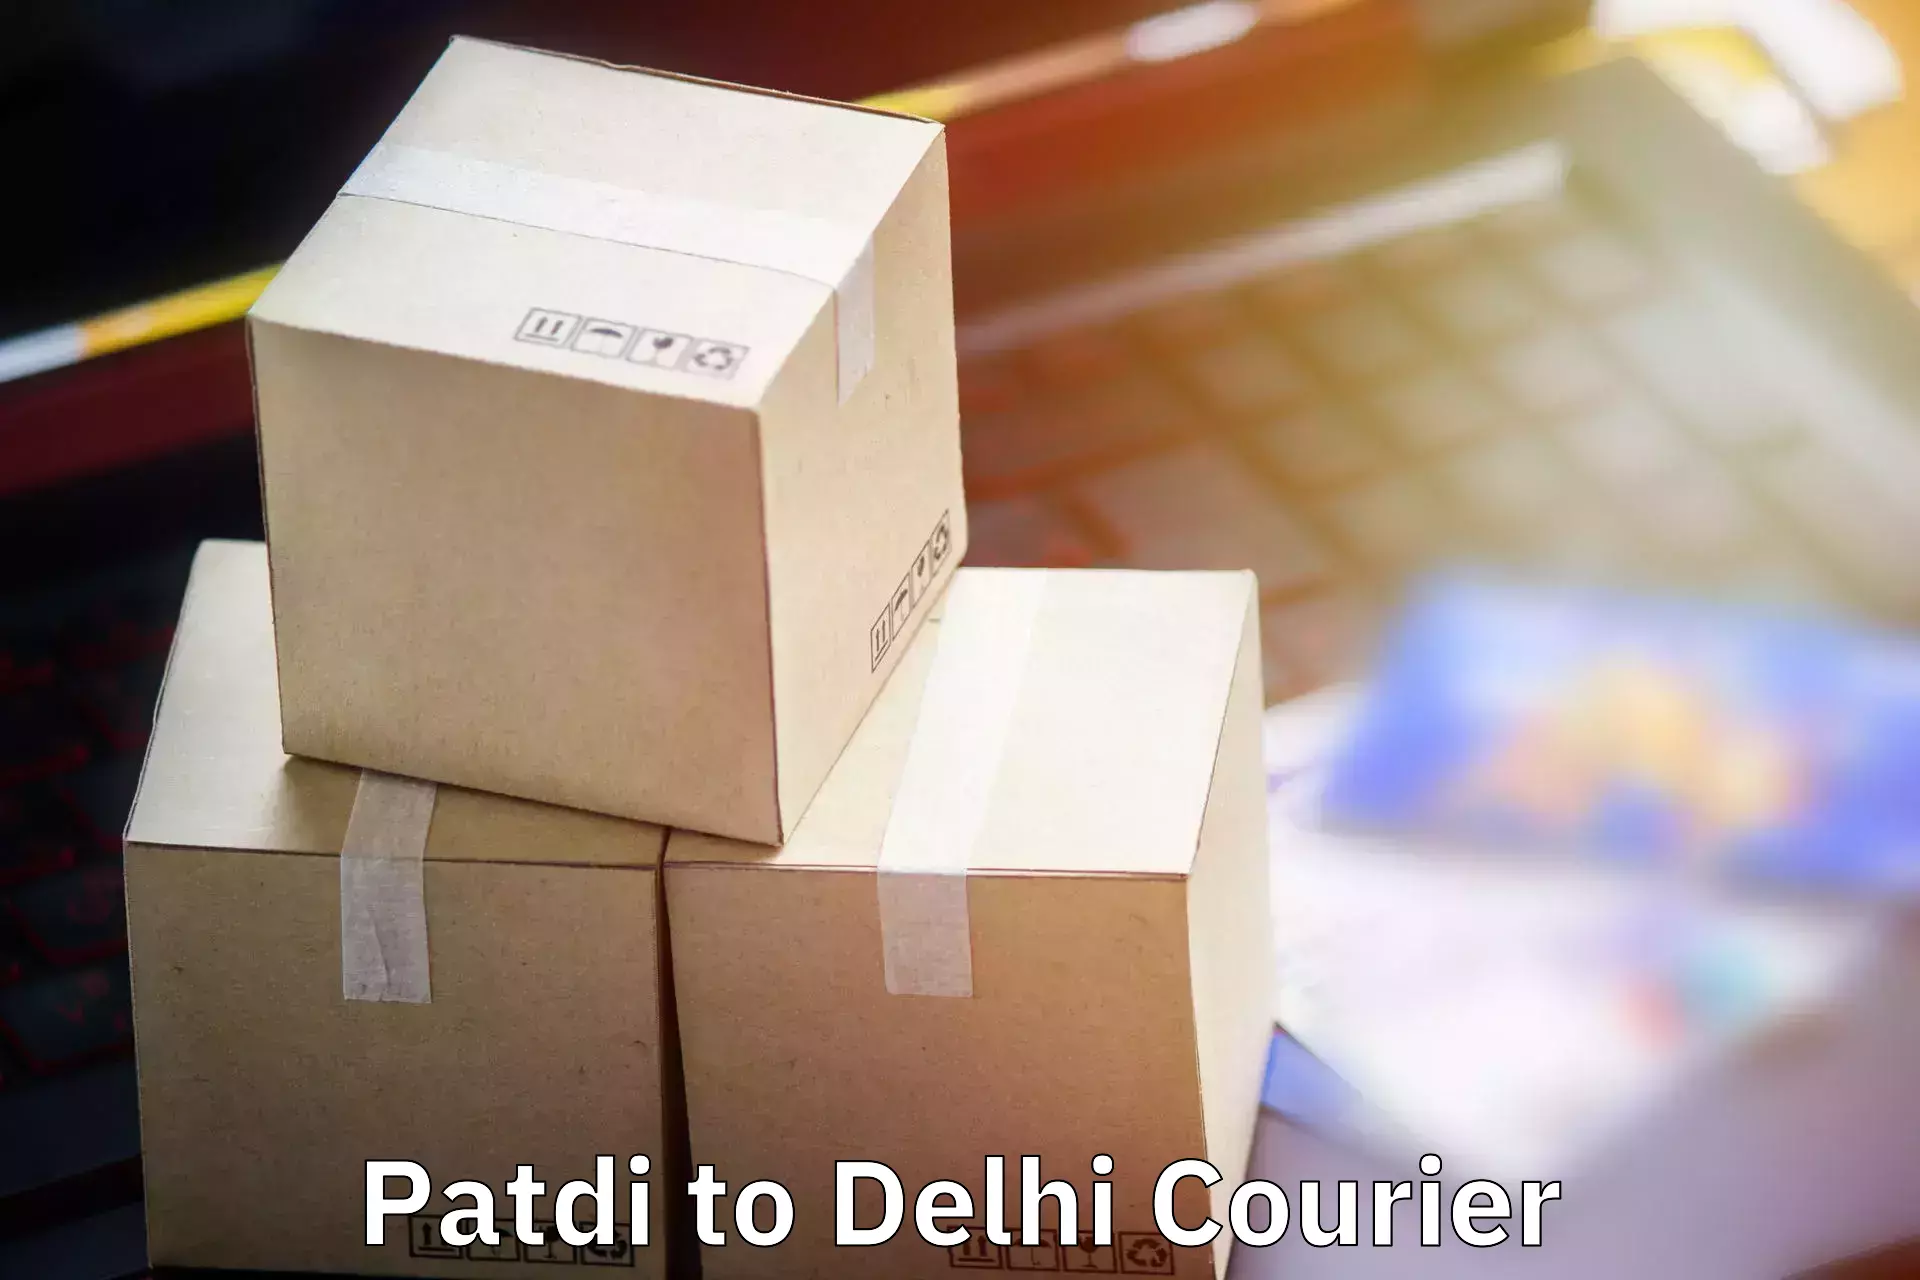 Luggage transport service Patdi to Delhi